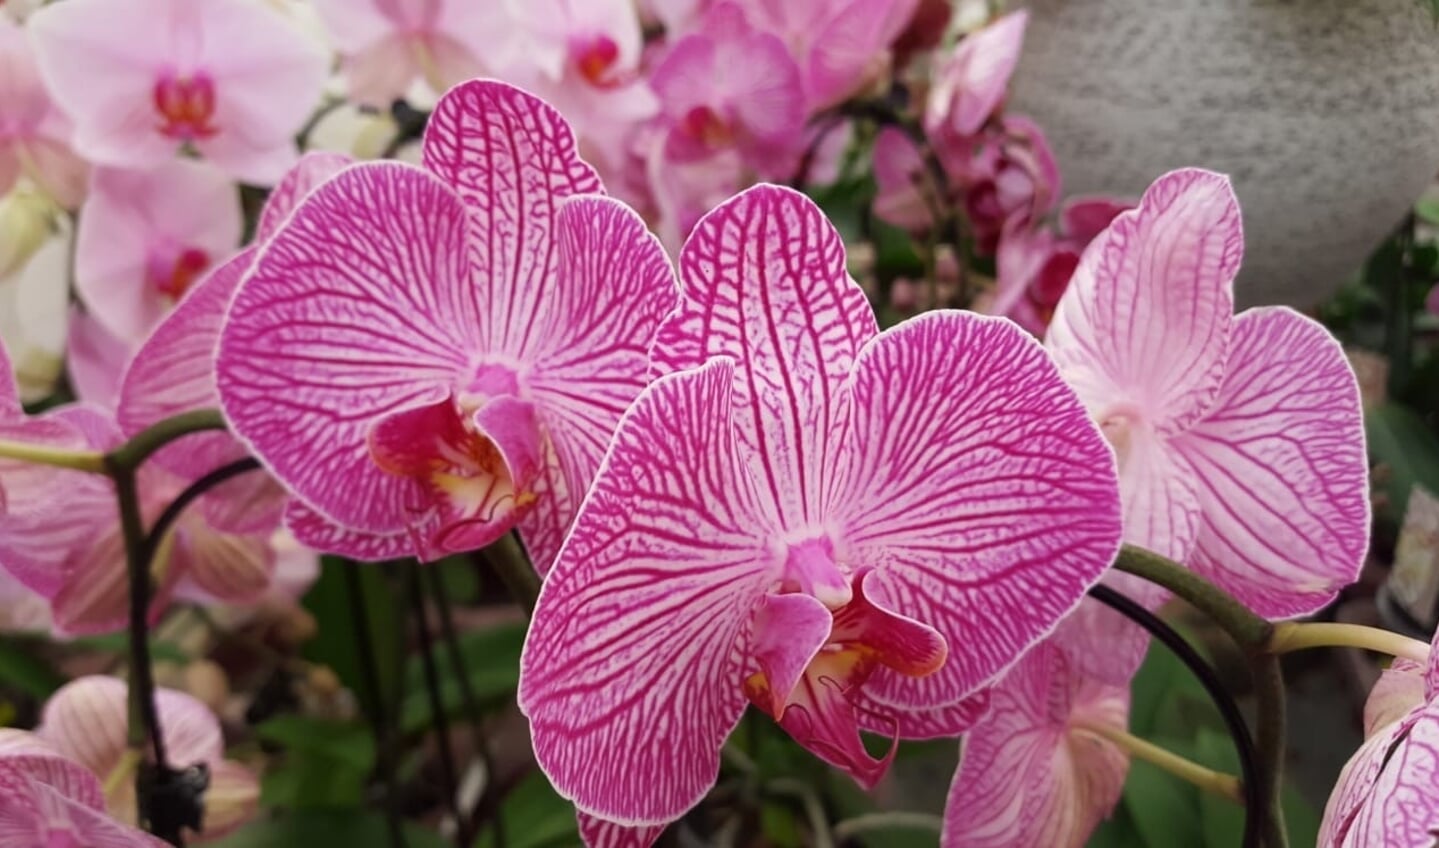 Elke orchidee heeft haar eigen schoonheid.